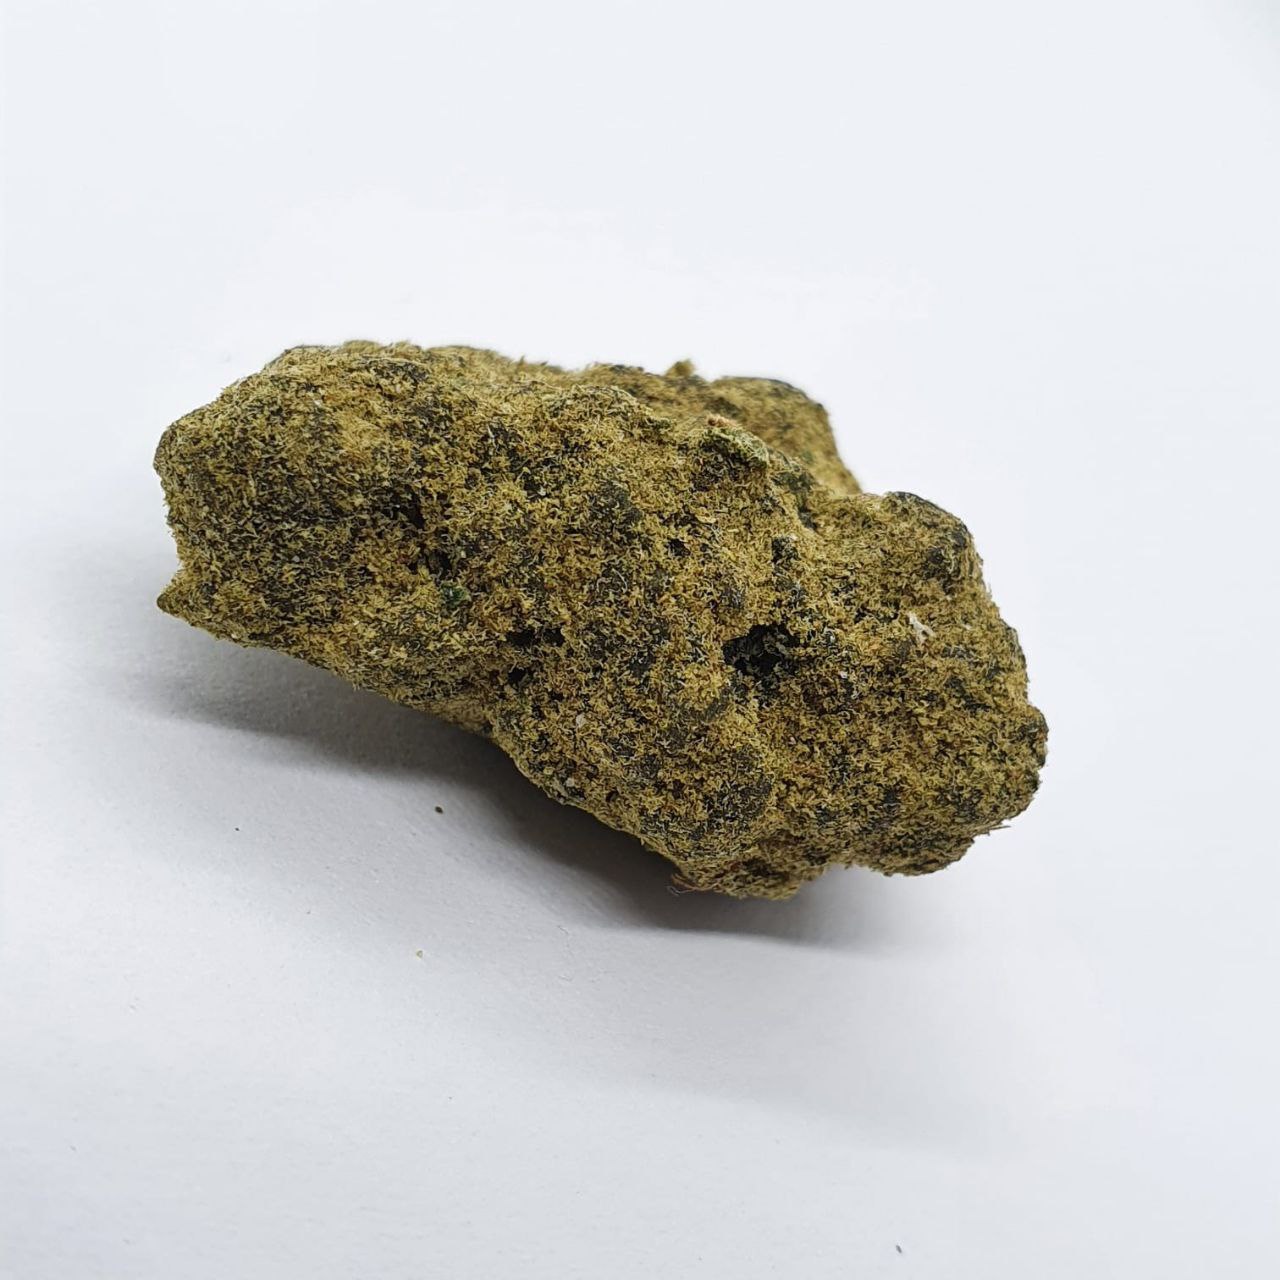 Moonrocks 62% CBD <0.2%THC hemp tea (EOB)